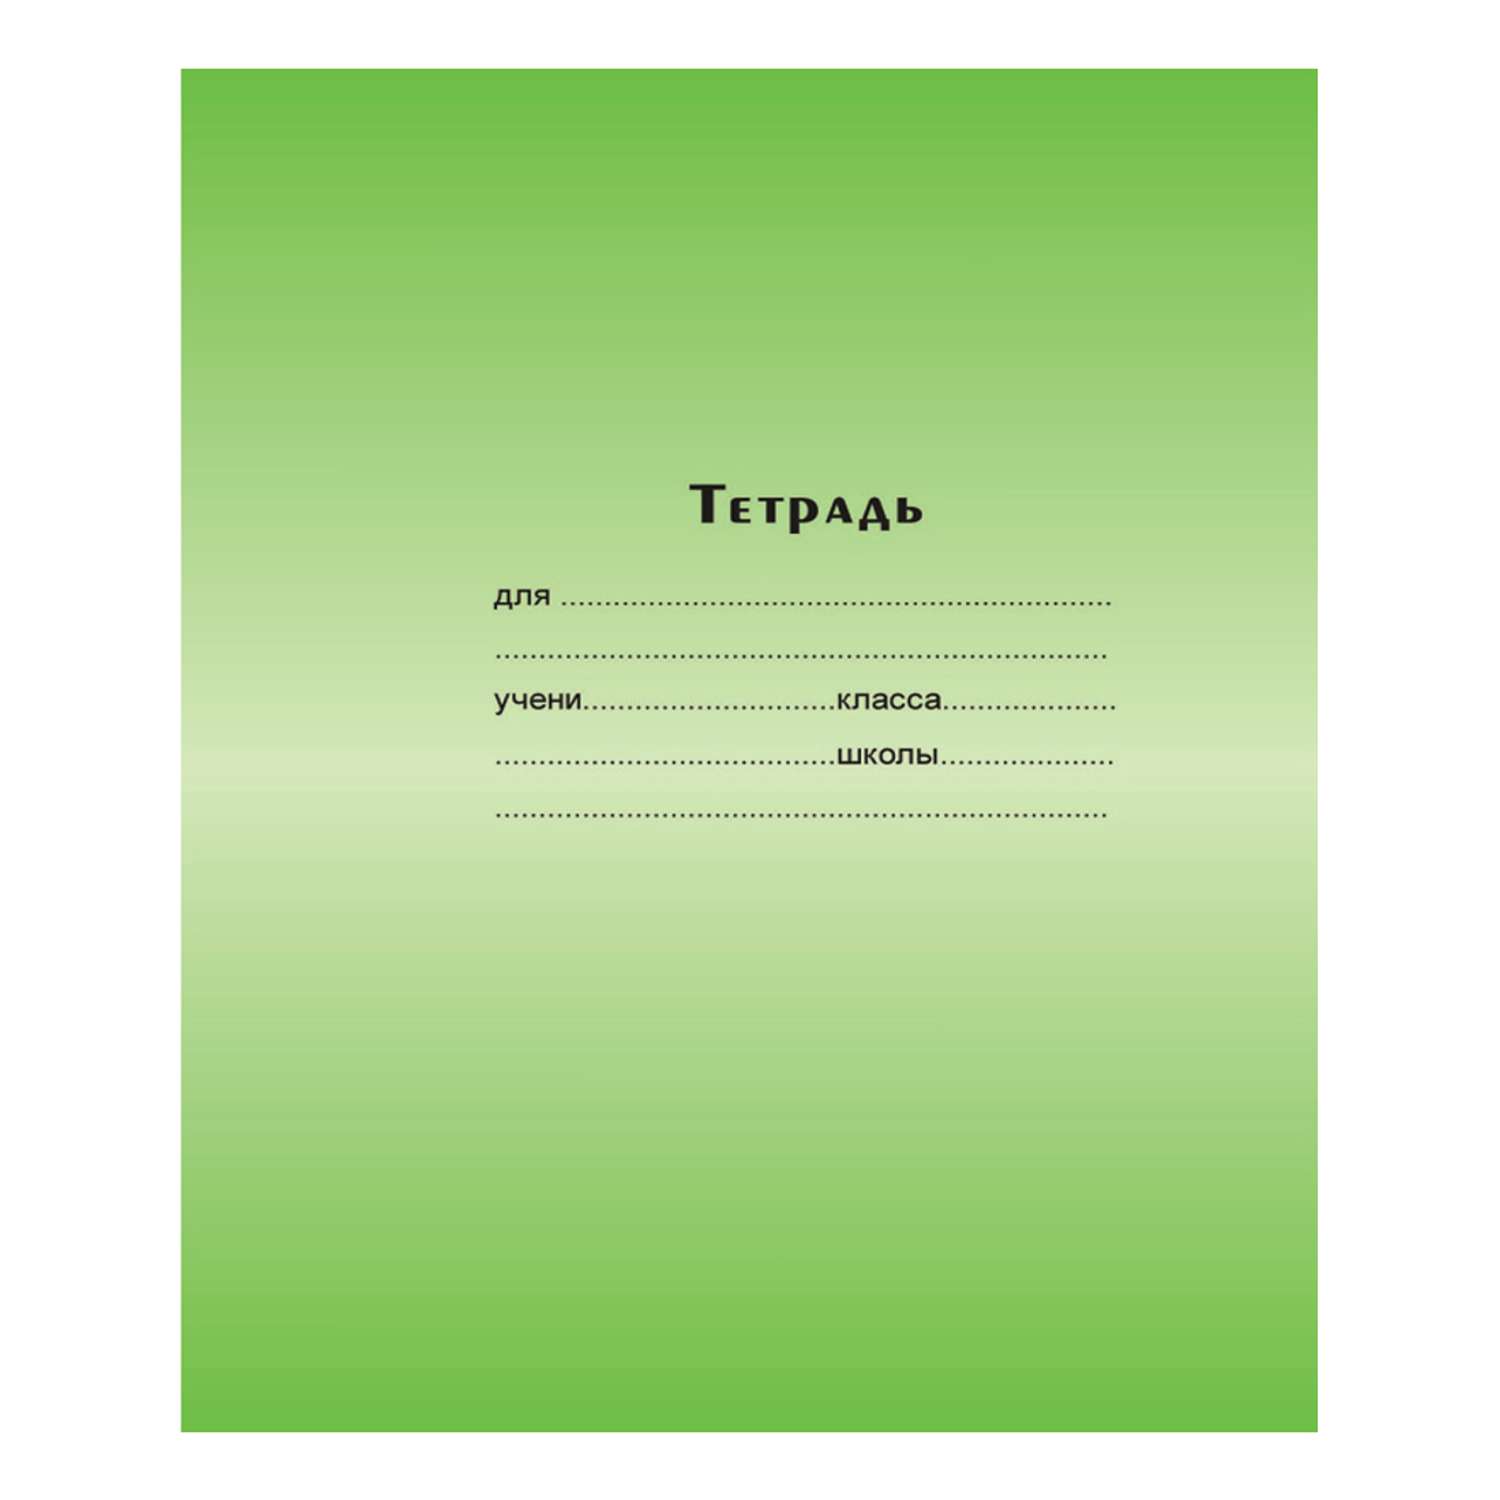 Тетрадь 12л. Мировые тетради зеленая мелованая обложка клетка - фото 1